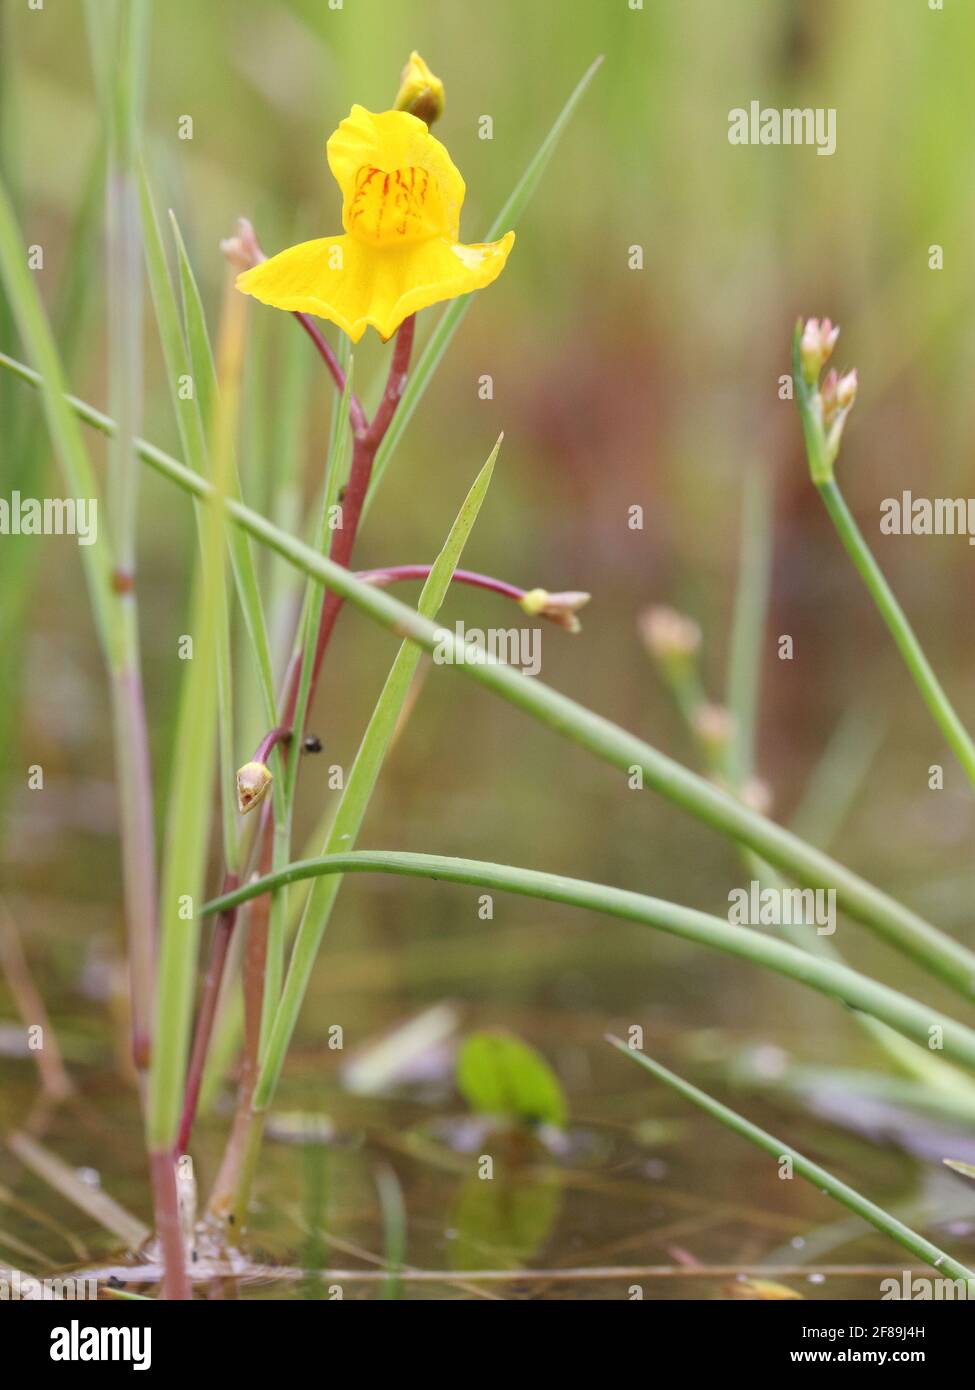 aquatic bladderwort Utricularia australis flowering Stock Photo